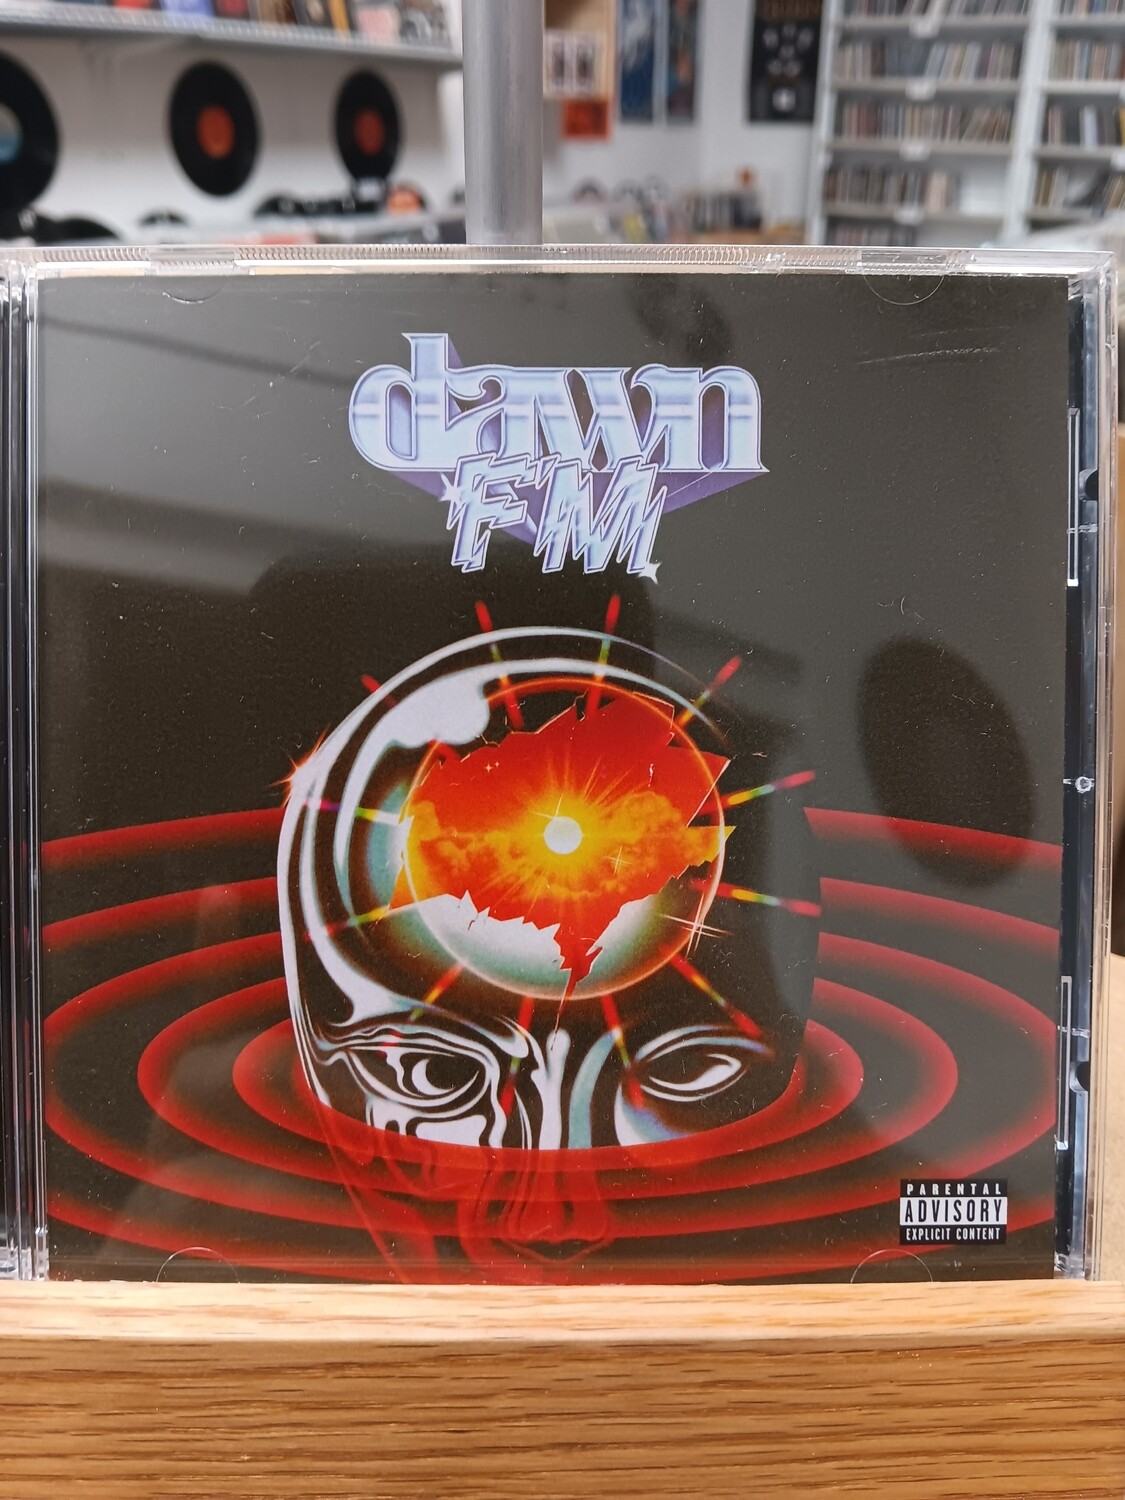 THE WEEKND - Dawn FM (CD)